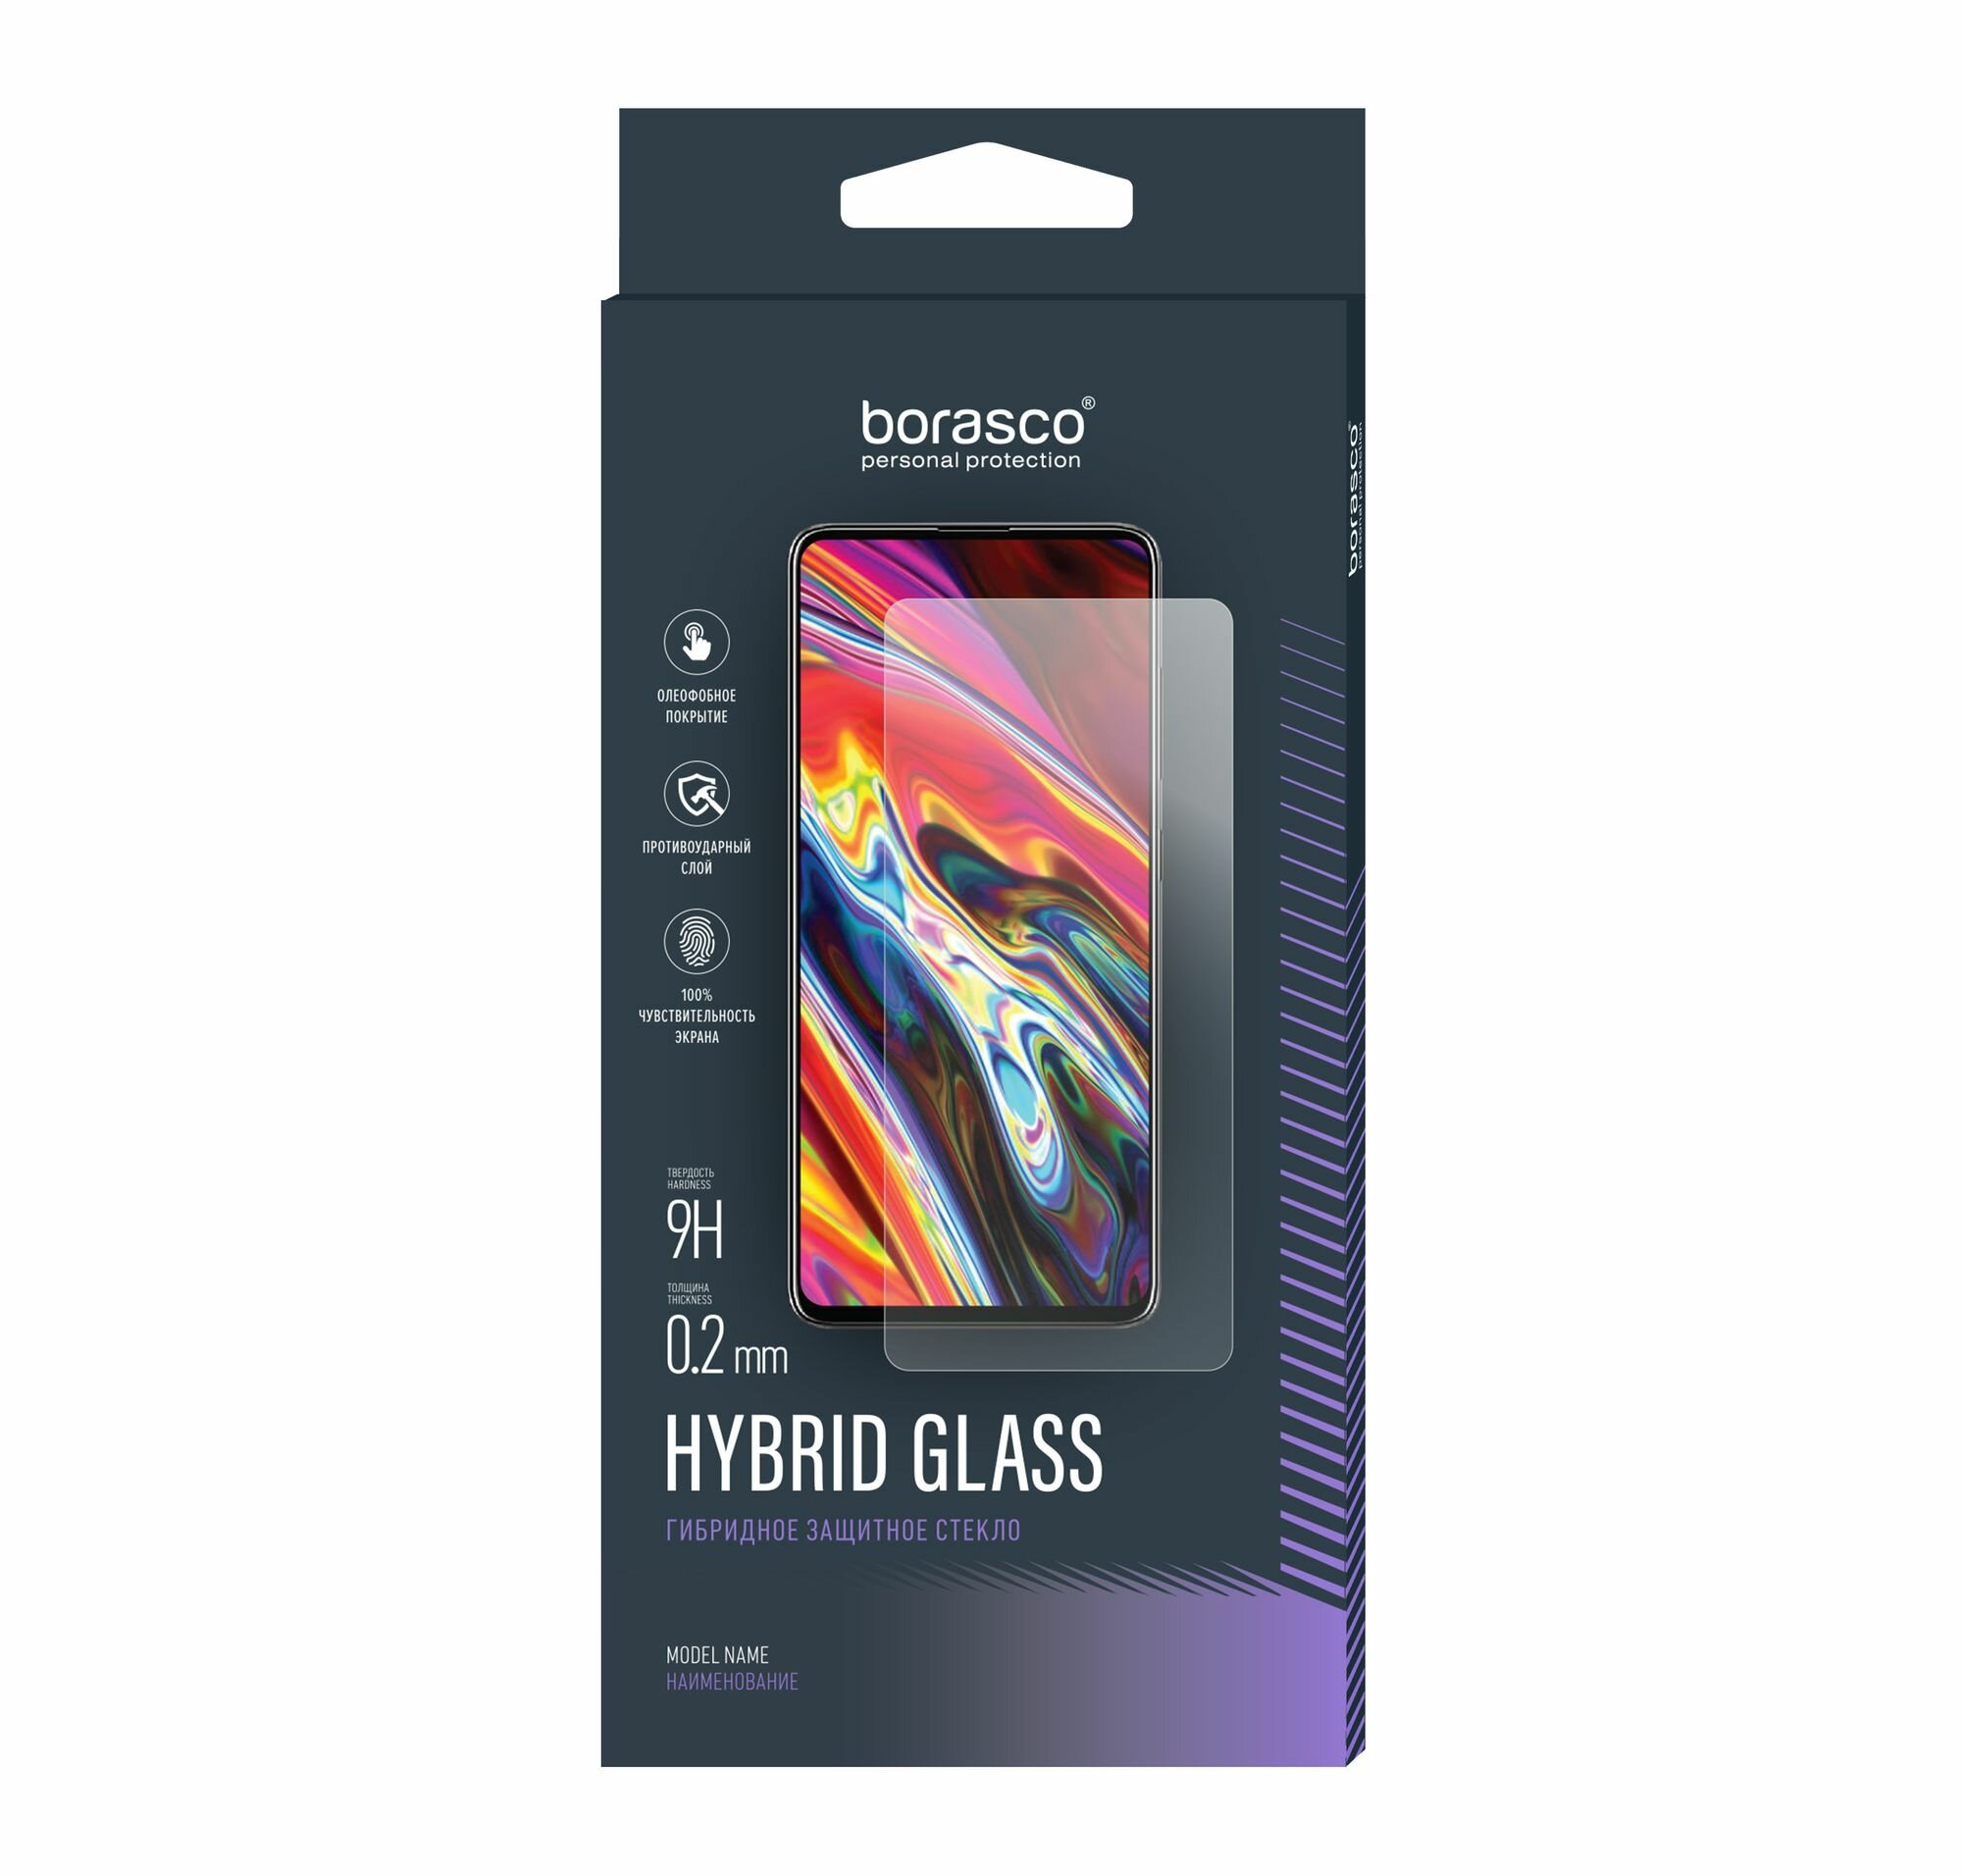 Стекло защитное Hybrid Glass VSP 026 мм для Lenovo Tab 3 Tab 3 Plus TB-8703F